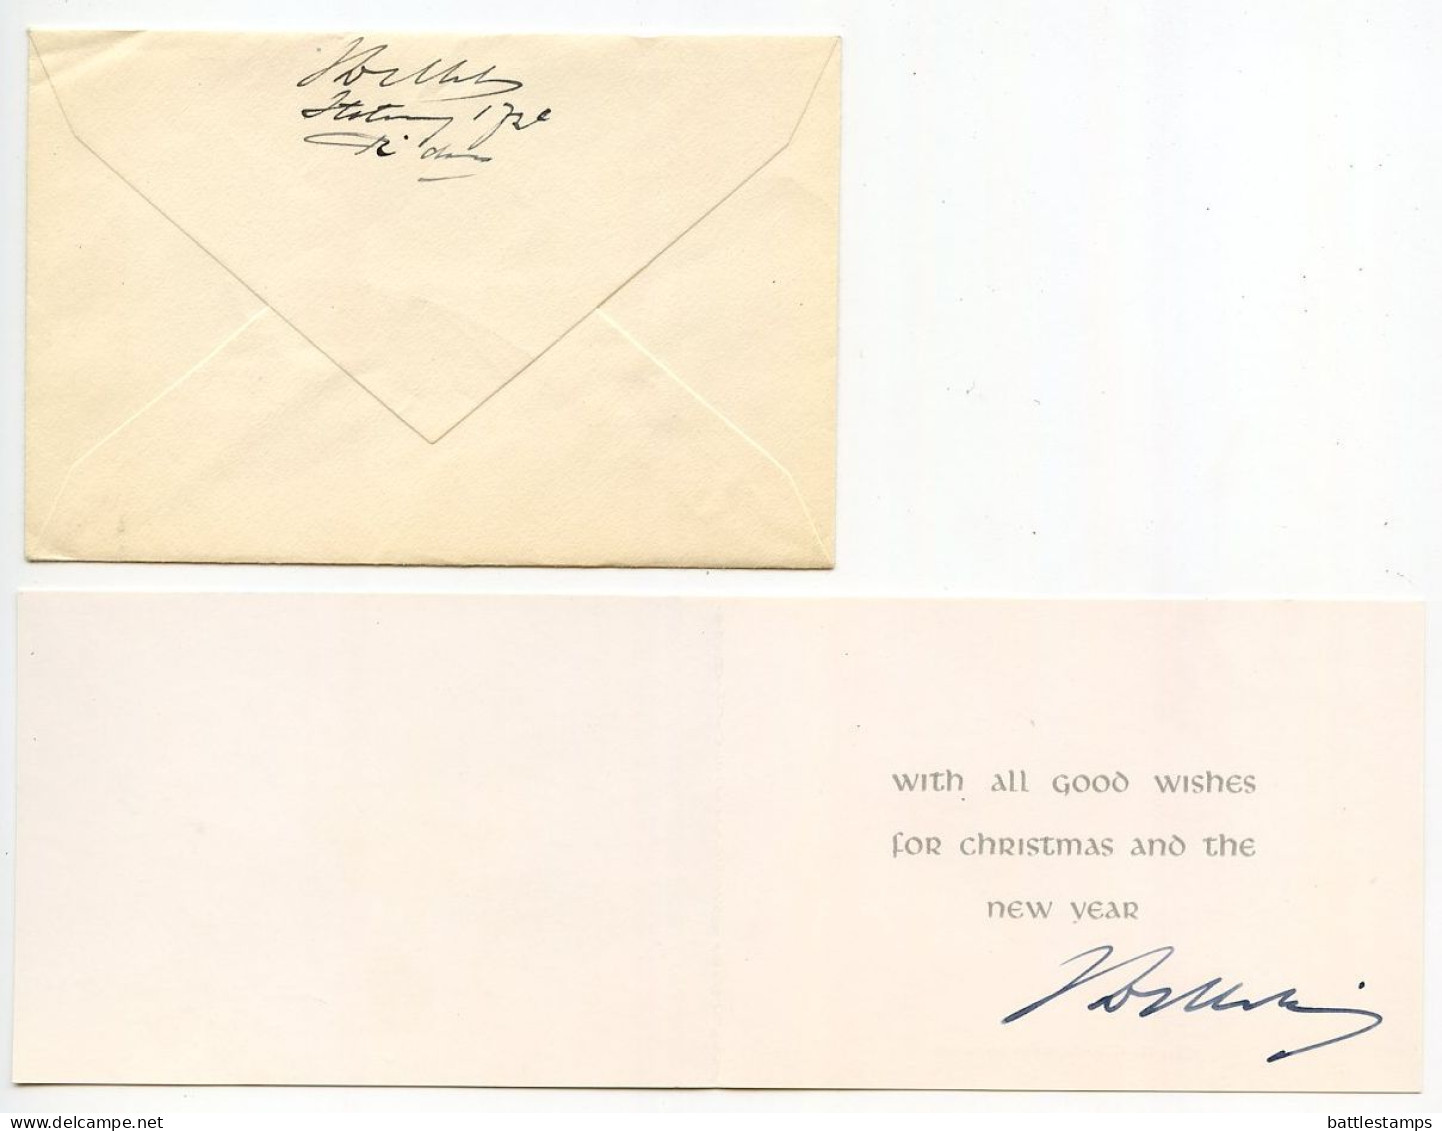 Netherlands 1958 Airmail Cover & Christmas / New Year Card; Rotterdam To Watervliet, New York; Scott B316 & B319 - Briefe U. Dokumente